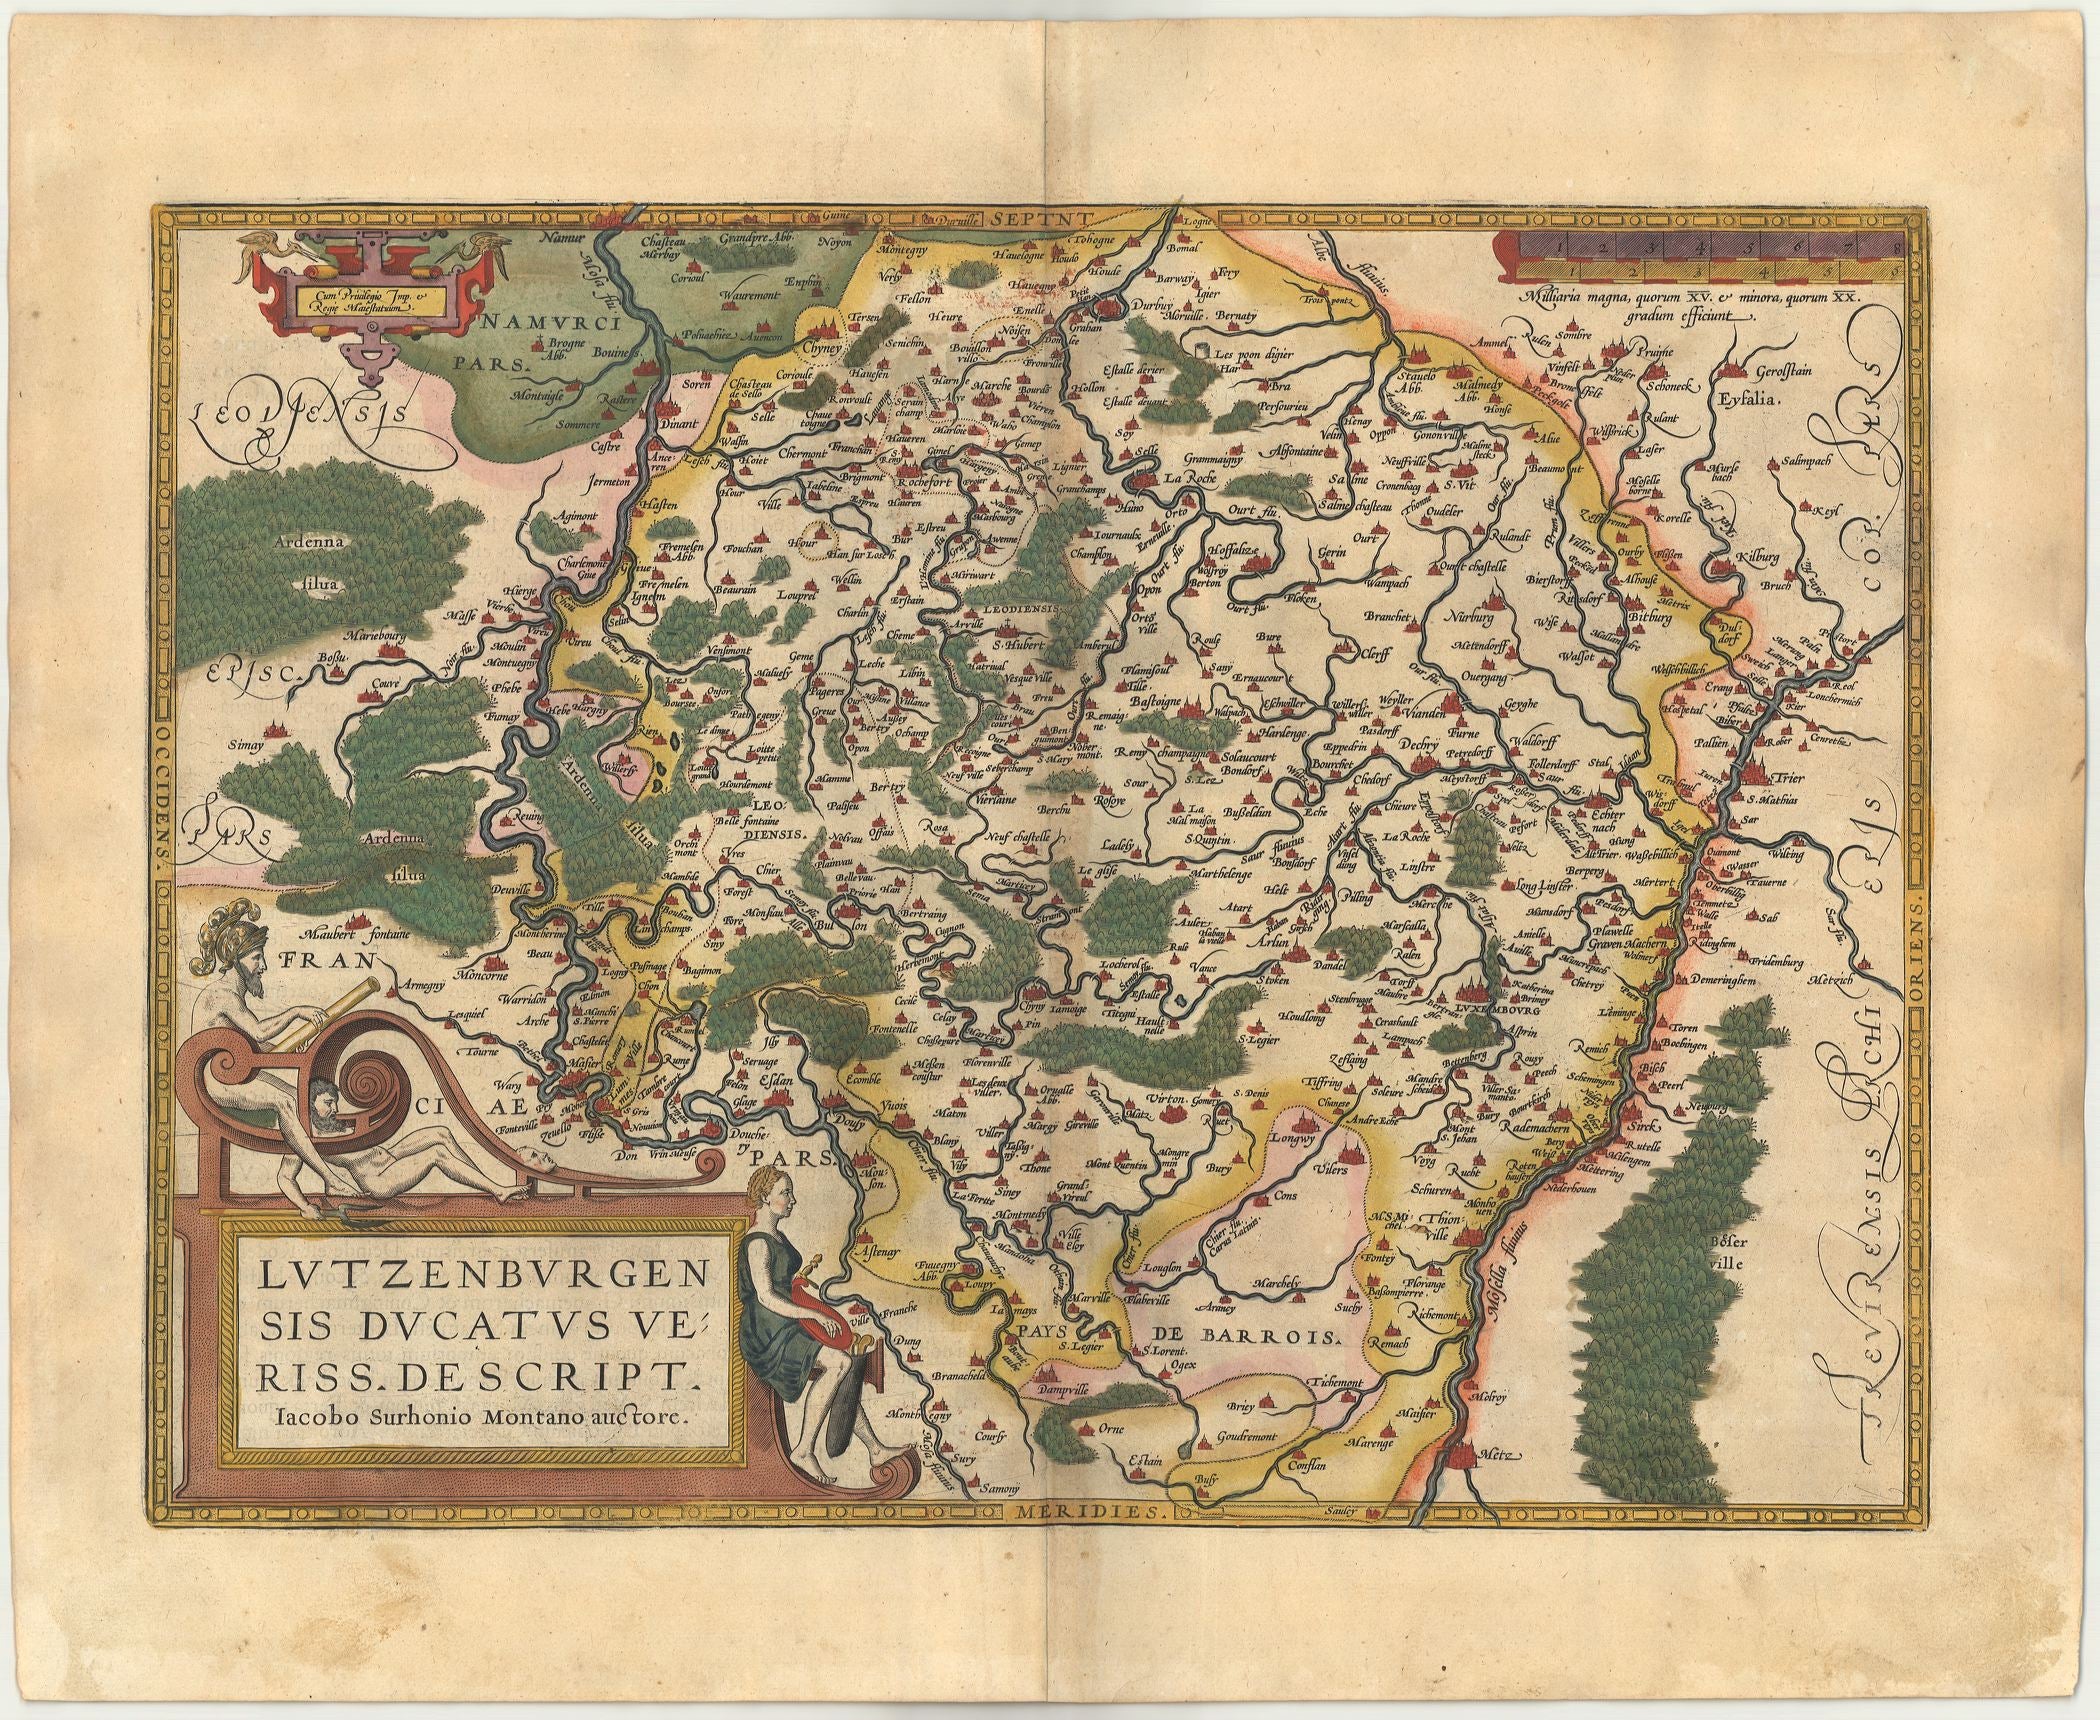 Luxemburg im Jahr 1612 von Abraham Ortelius